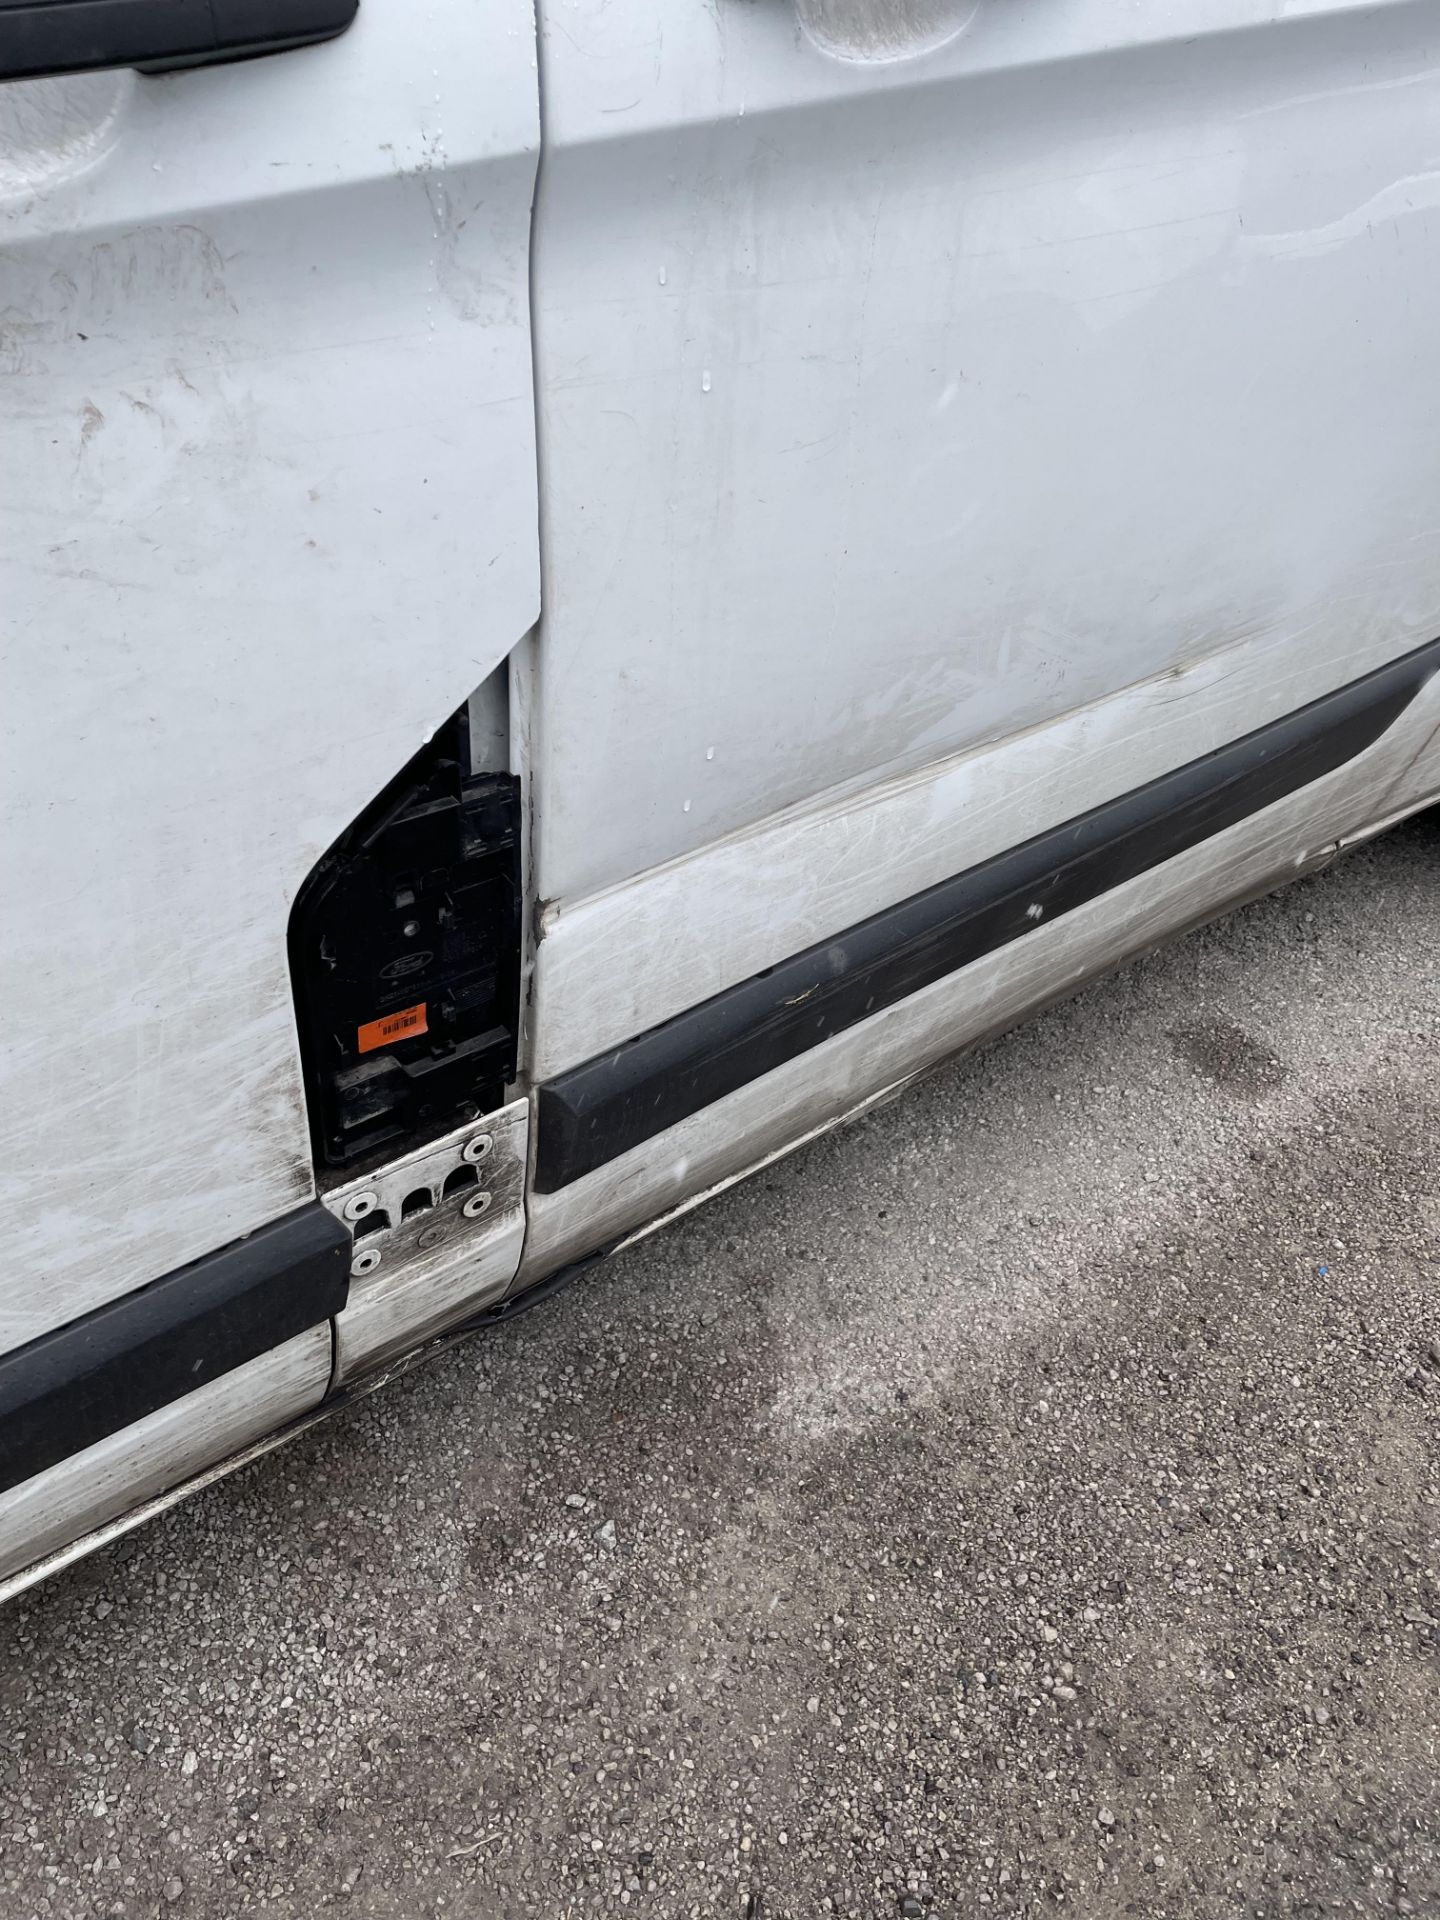 2020 Ford Transit panel van - Image 4 of 9